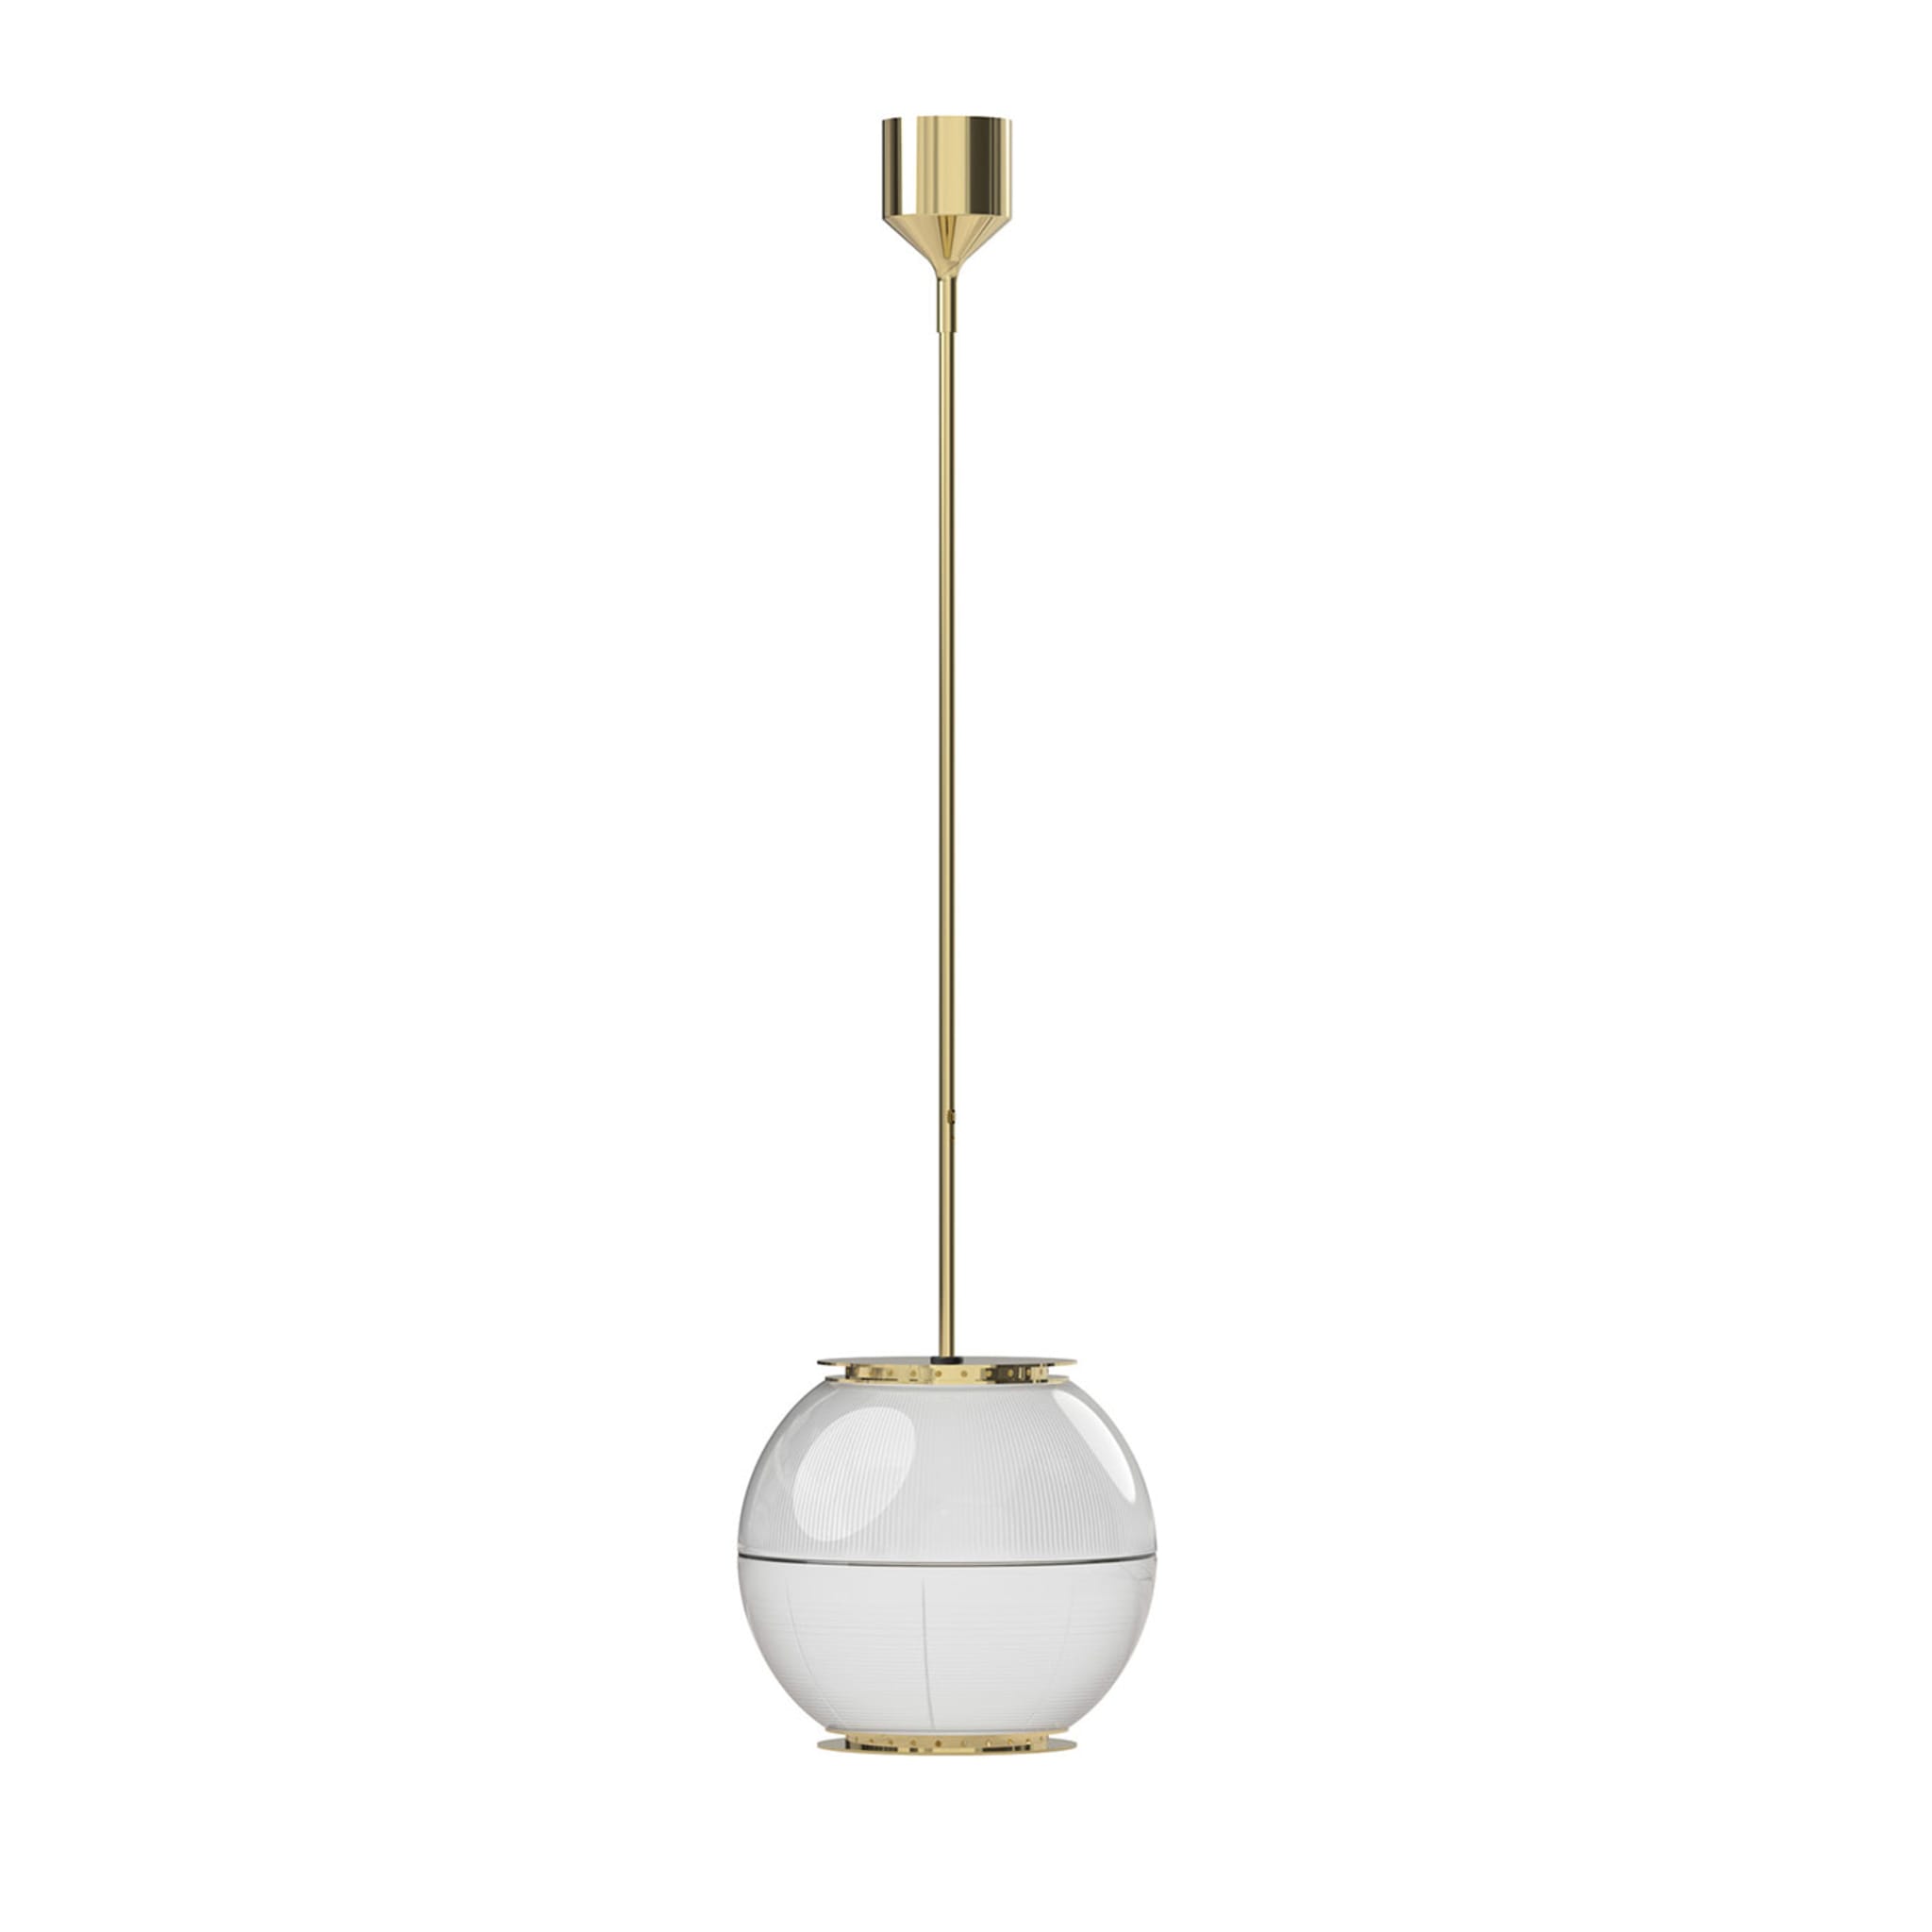 Doppio Vetro Brass Pendant Lamp by Ignazio Gardella - Main view